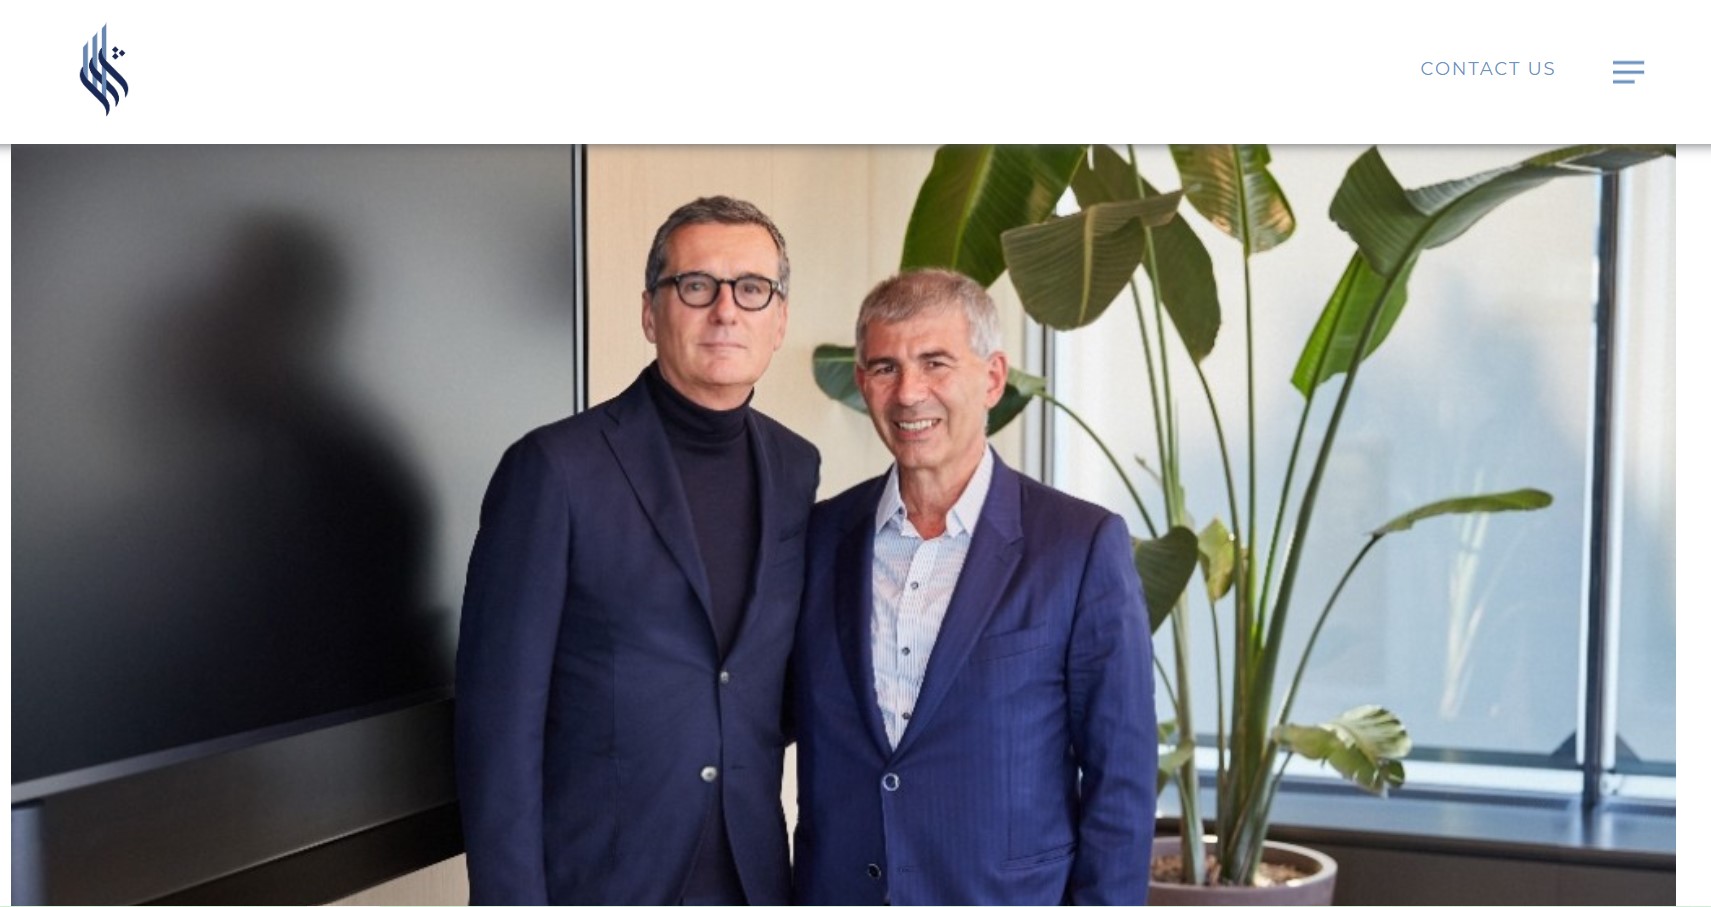 眼镜巨头 EssilorLuxottica 和中东奢侈品巨头 Chalhoub 签署合资协议